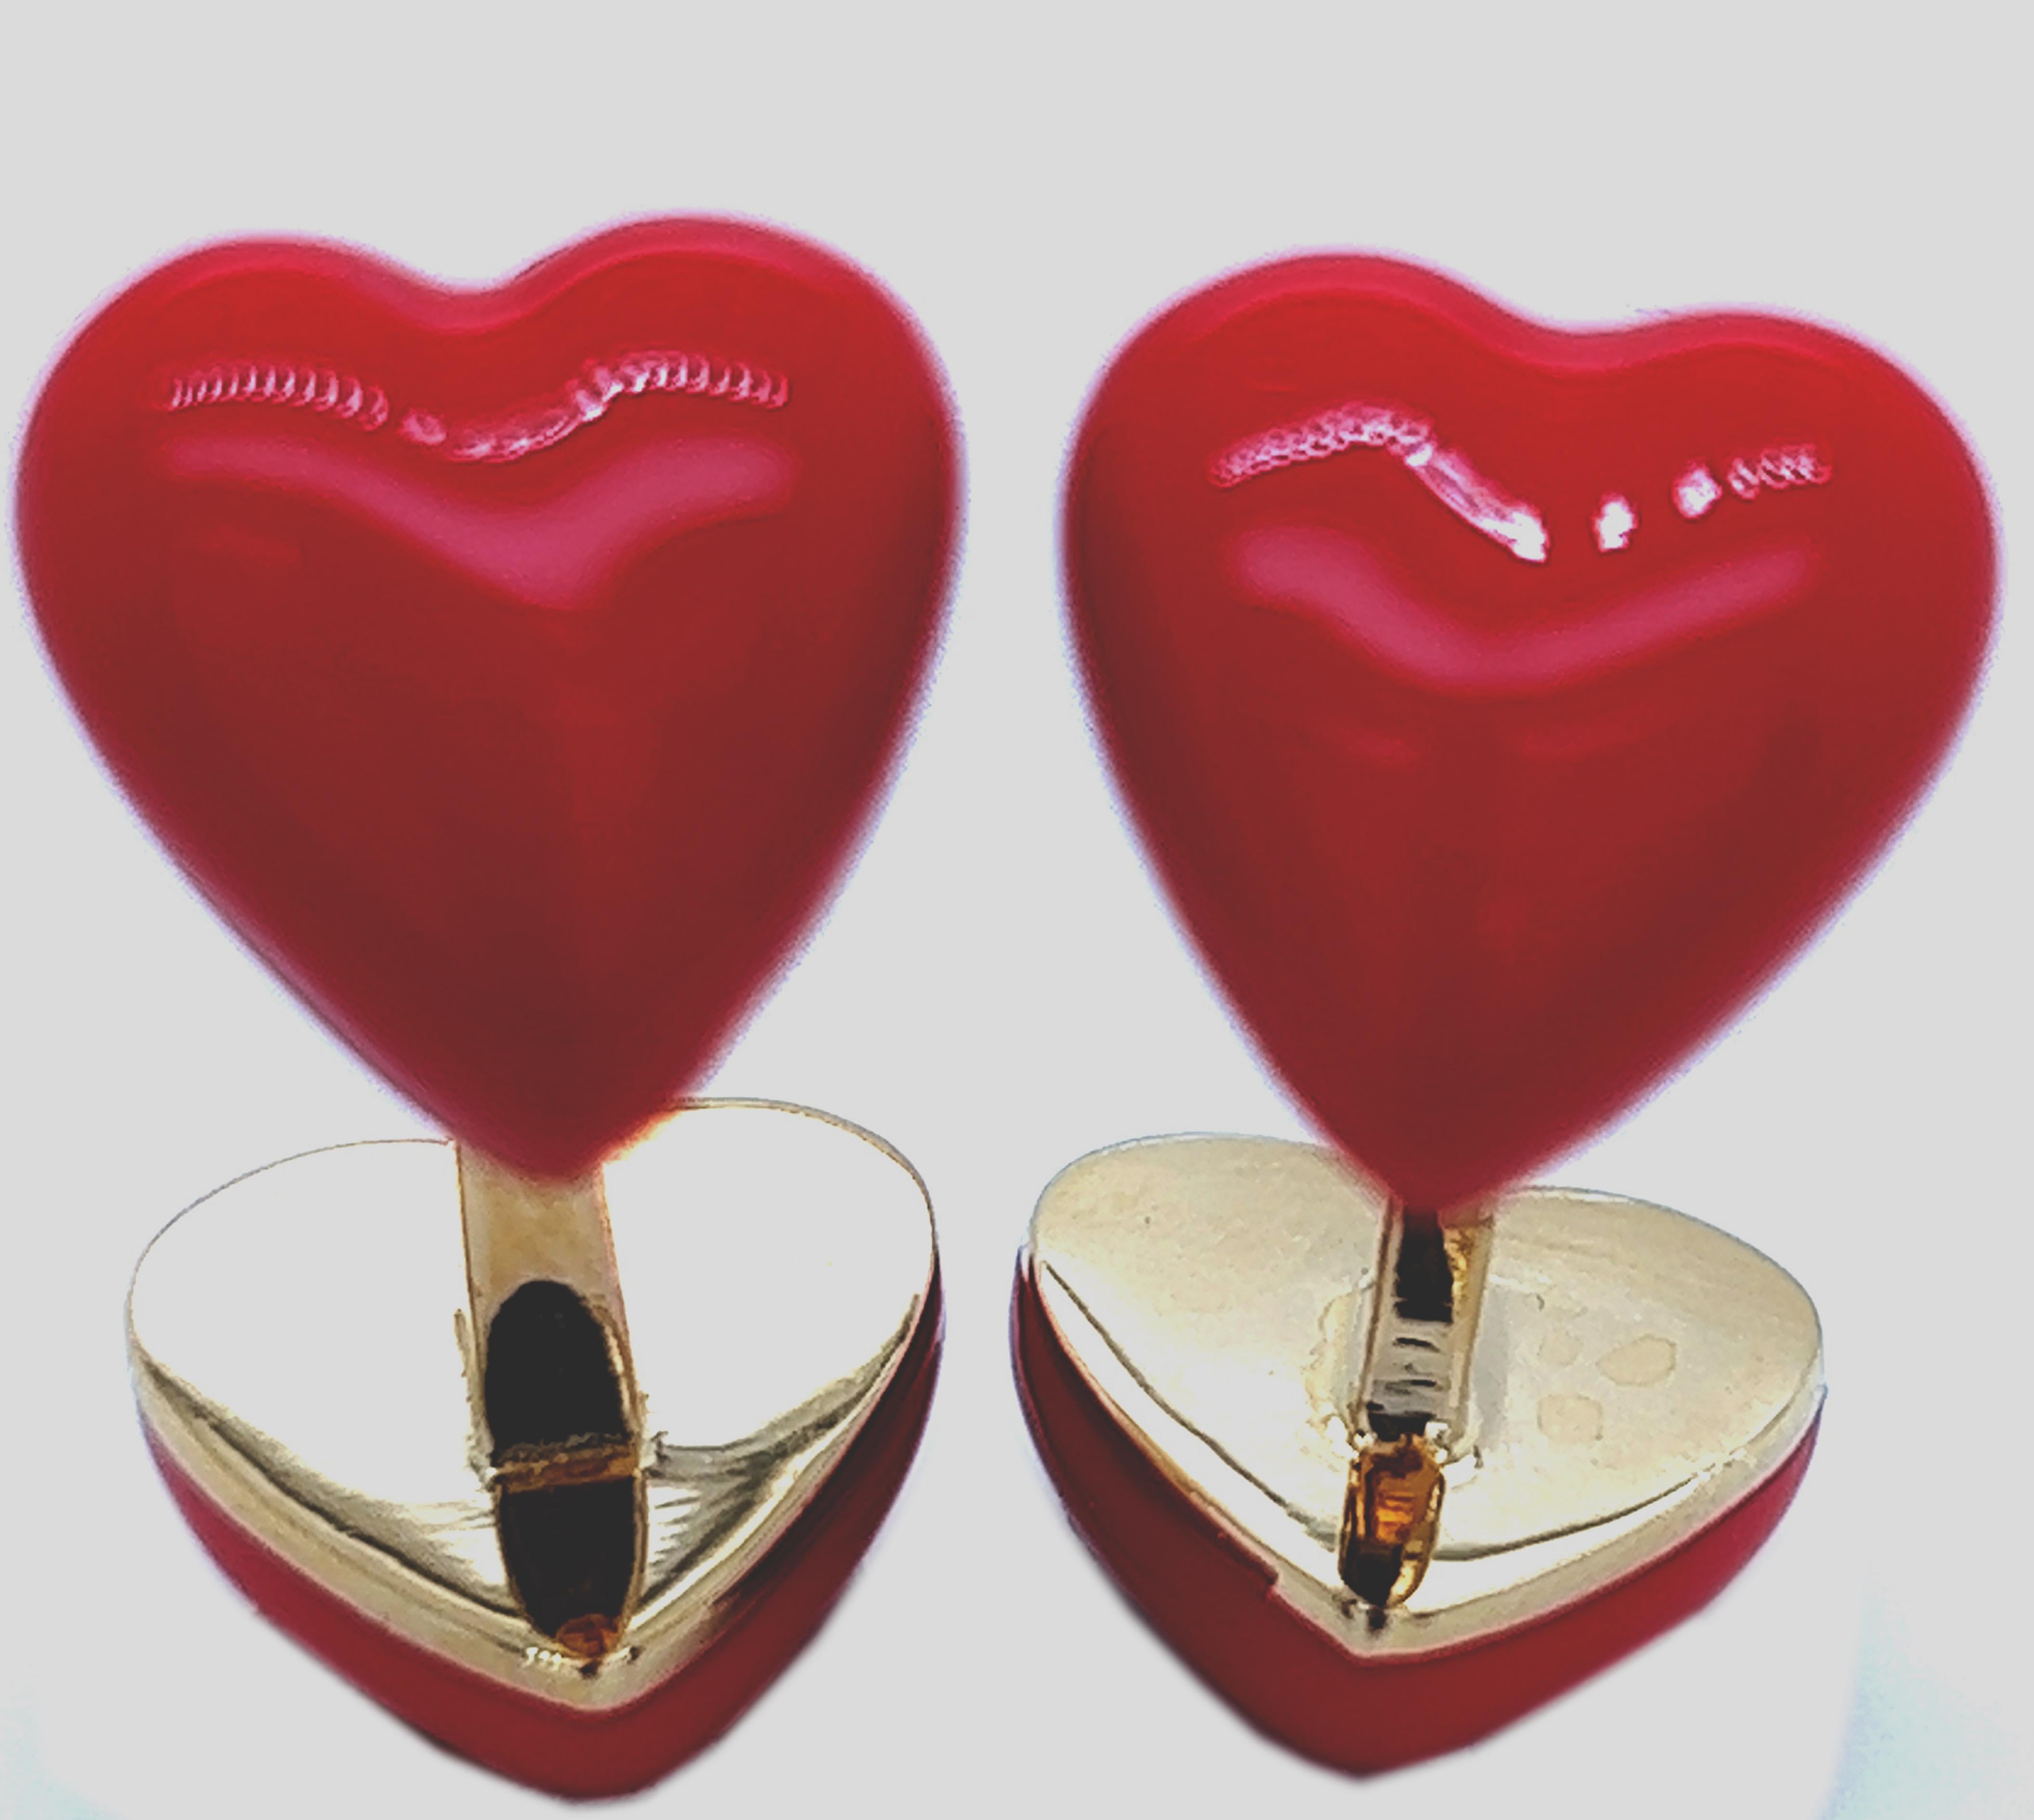 Einzigartige, absolut schicke und dennoch zeitlose Manschettenknöpfe in Form eines roten Herz-Cabochons, handemailliert in vergoldetem Sterlingsilber.
In unserem eleganten Wildlederetui und Etui.